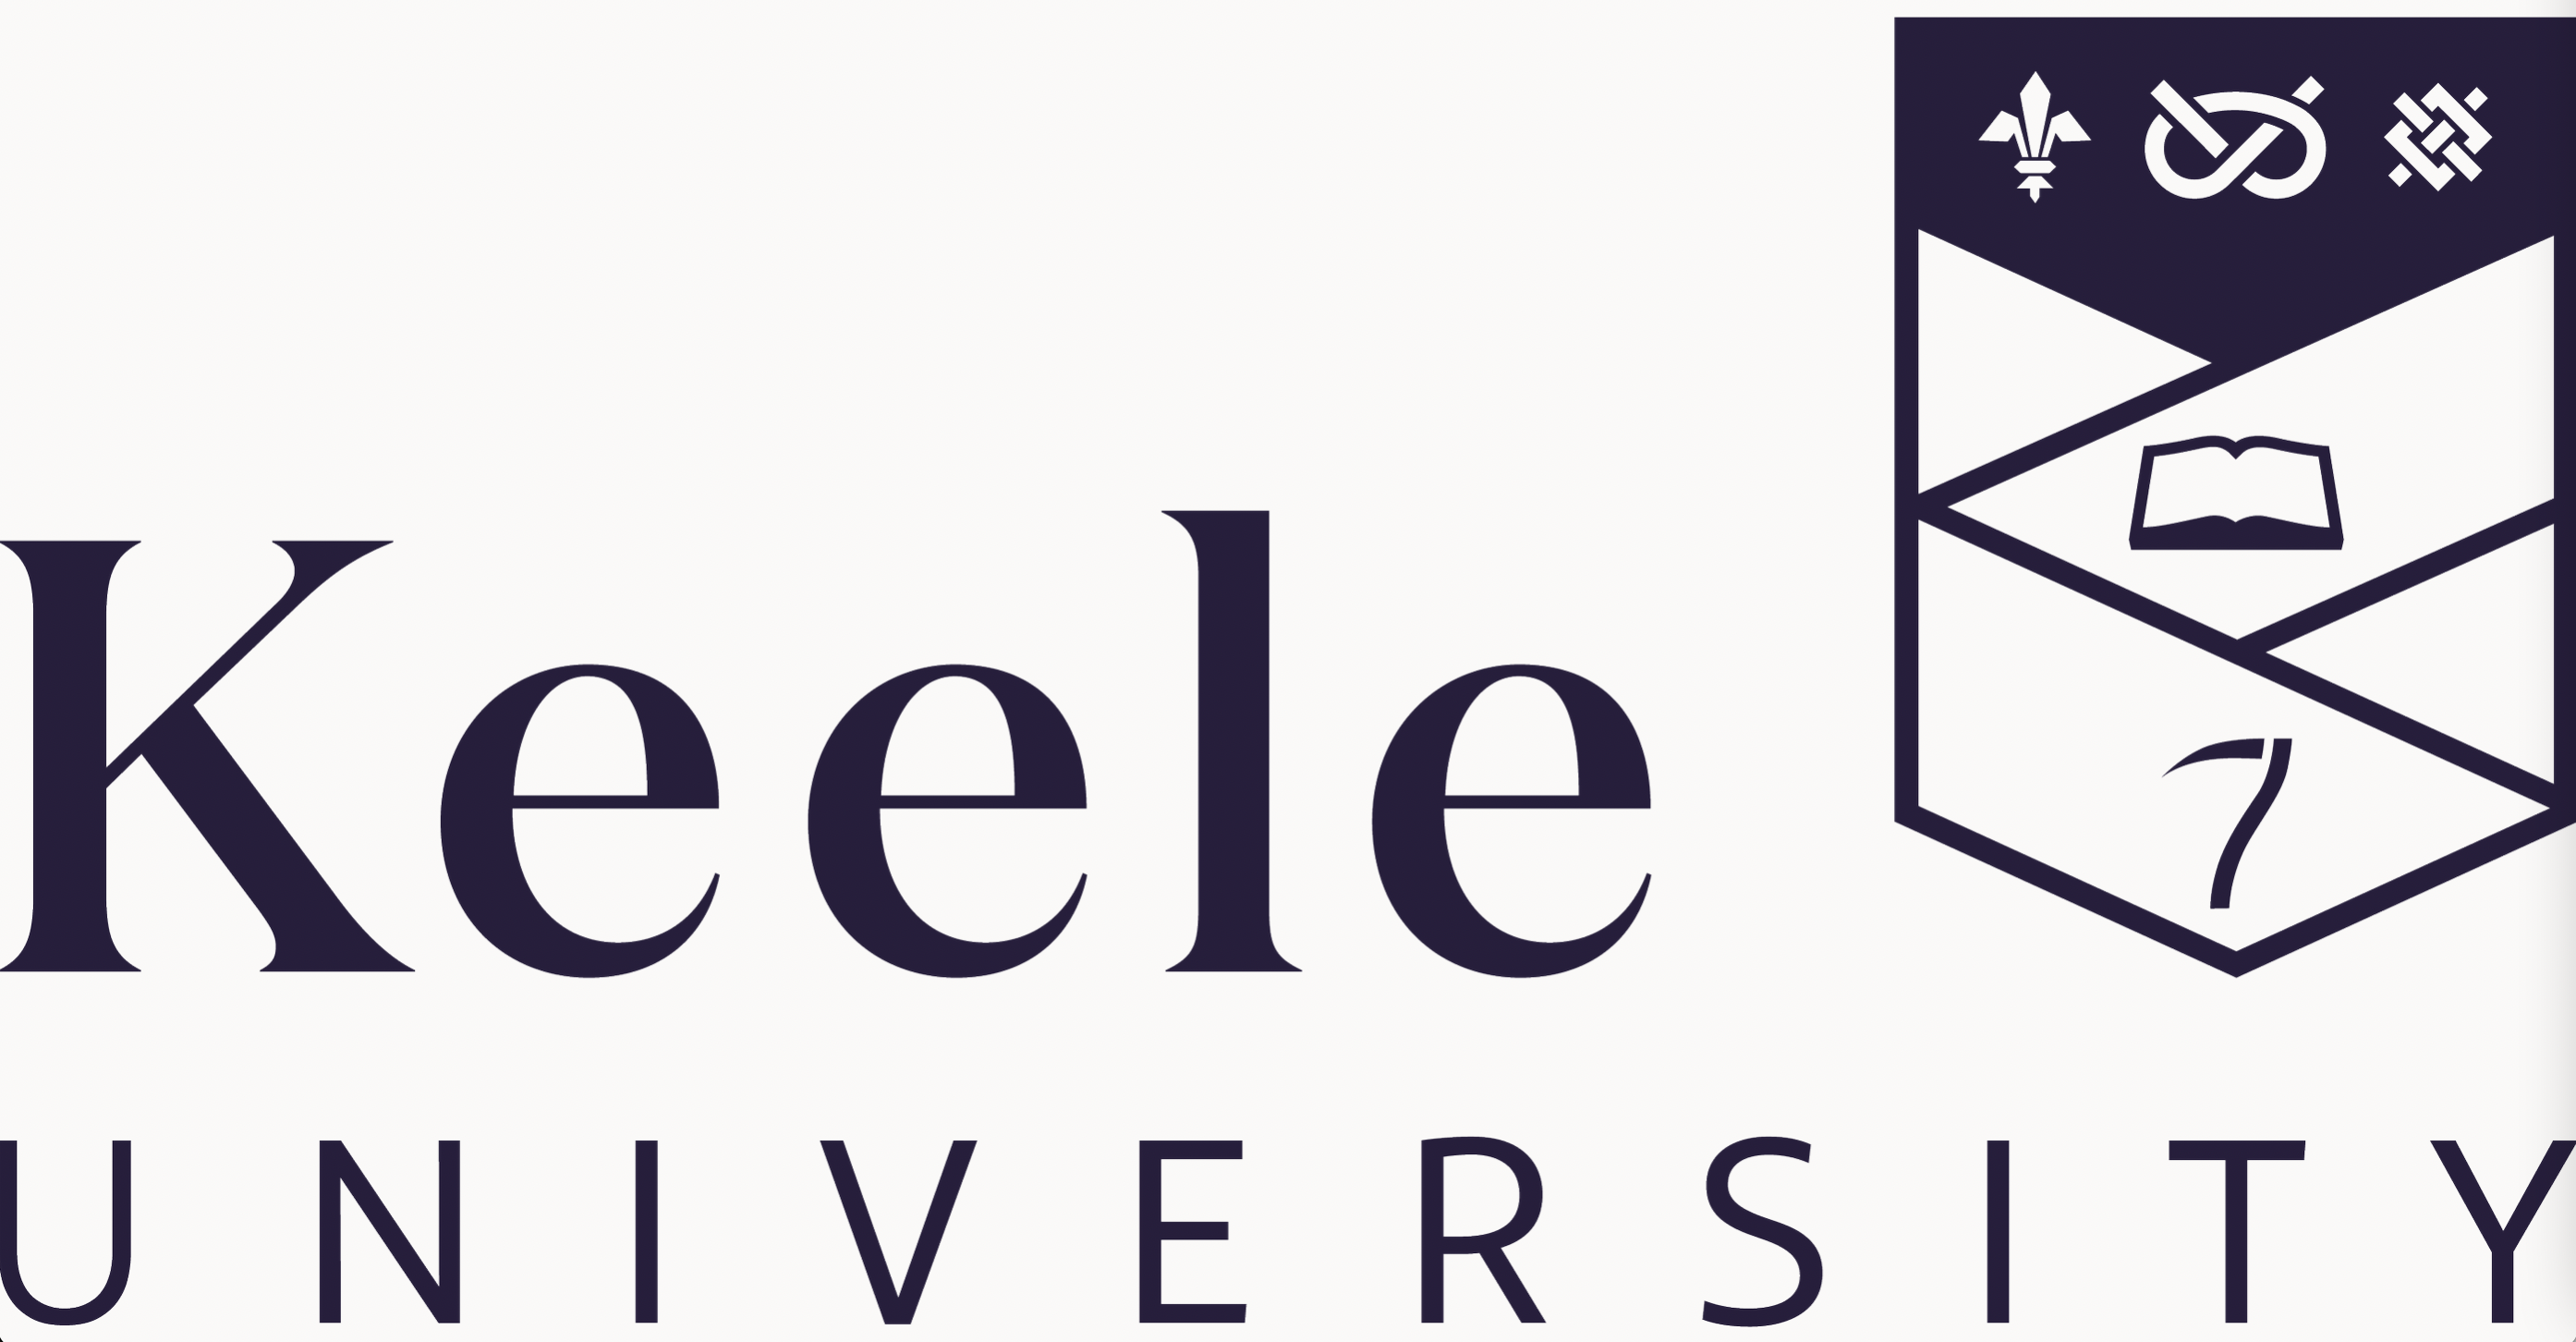 Keele University logo